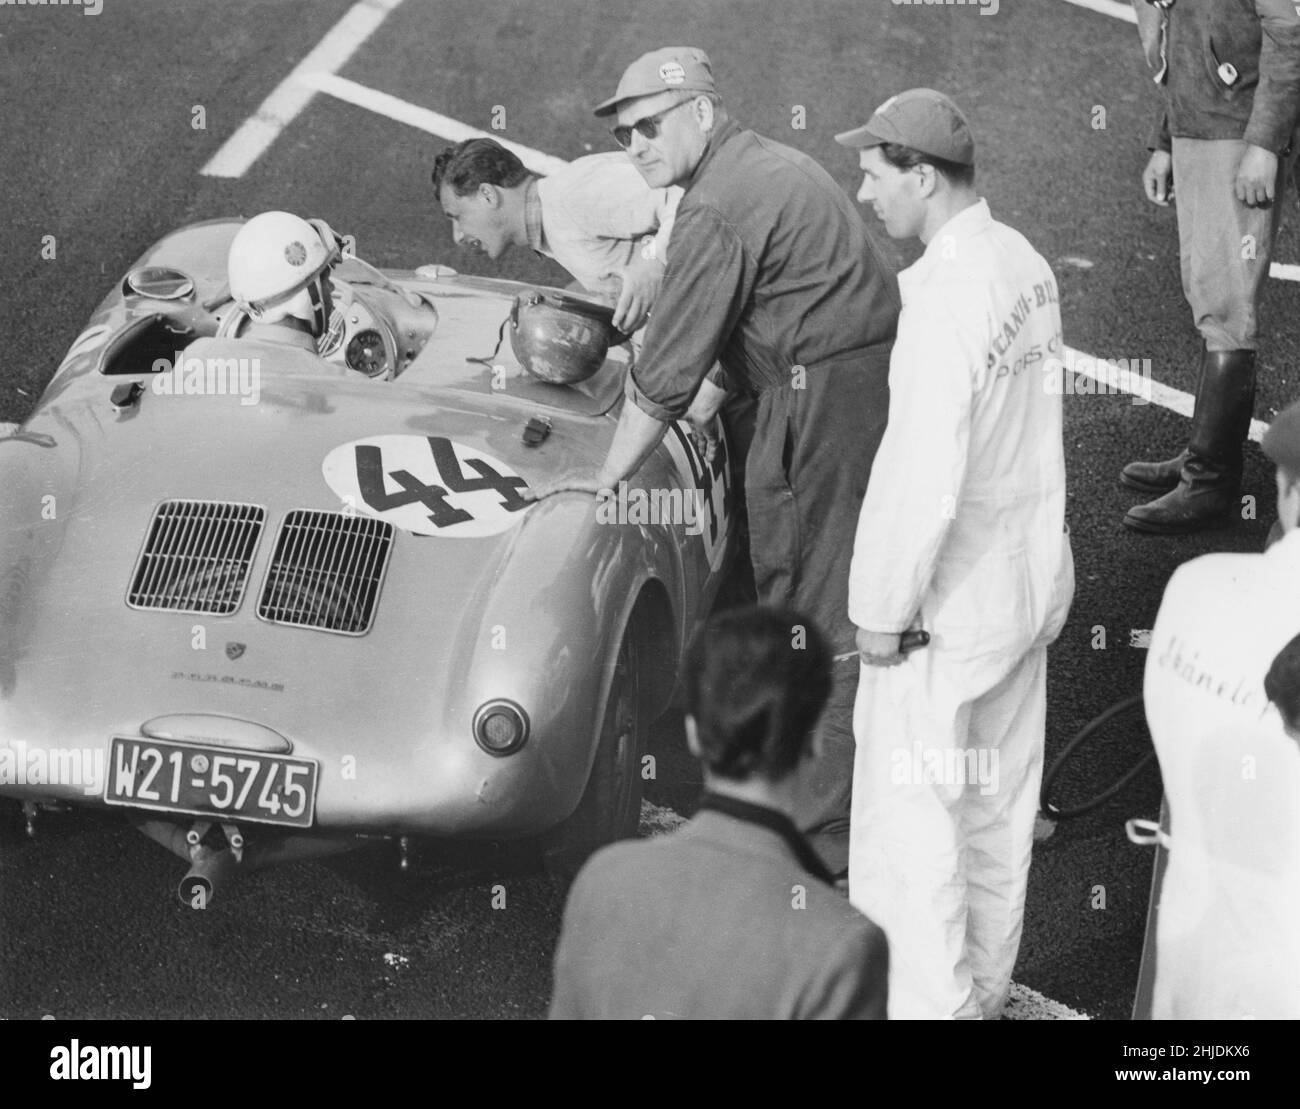 Voiture de course du 1950s.Le pilote de voiture de course allemand Gert Kaiser est photographié dans sa Porsche 330 spyder lors du grand prix suédois qui s'est tenu à Kristianstad 1958.L'homme pendu à parler avec lui est Hans Herrmann, également un célèbre pilote de dadduson. Banque D'Images